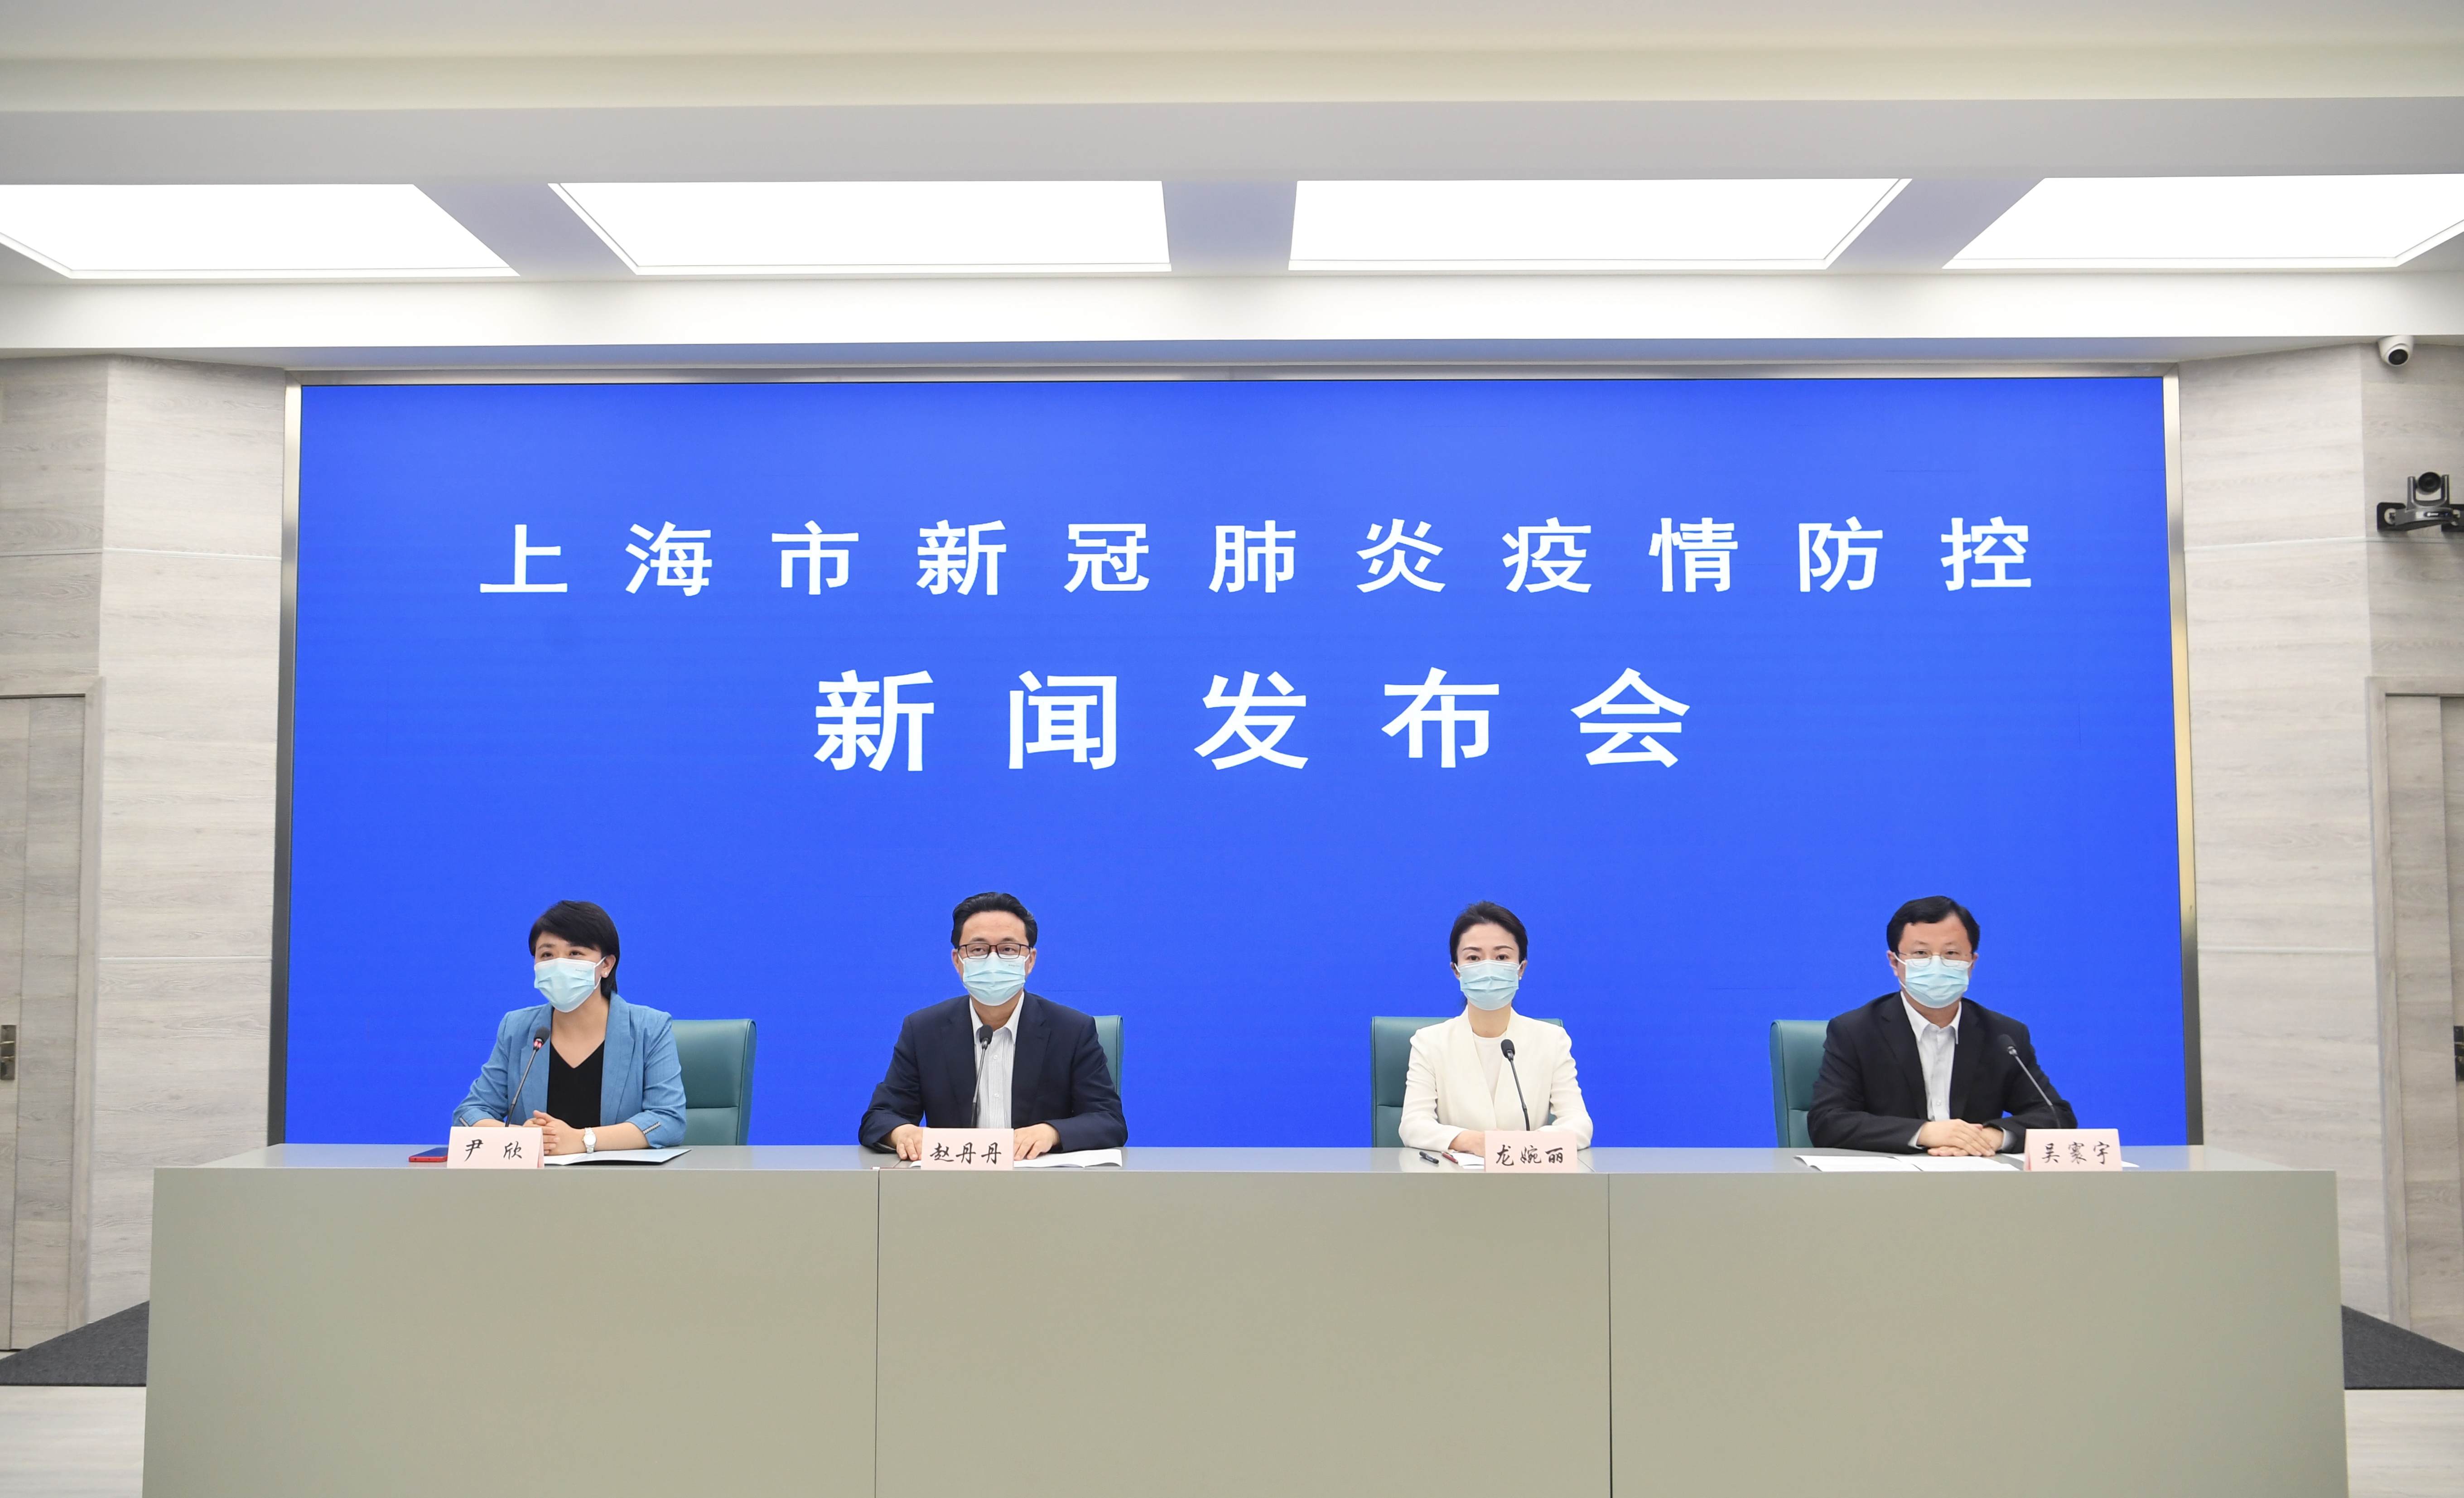 6月18日上海通报新冠肺炎防控情况